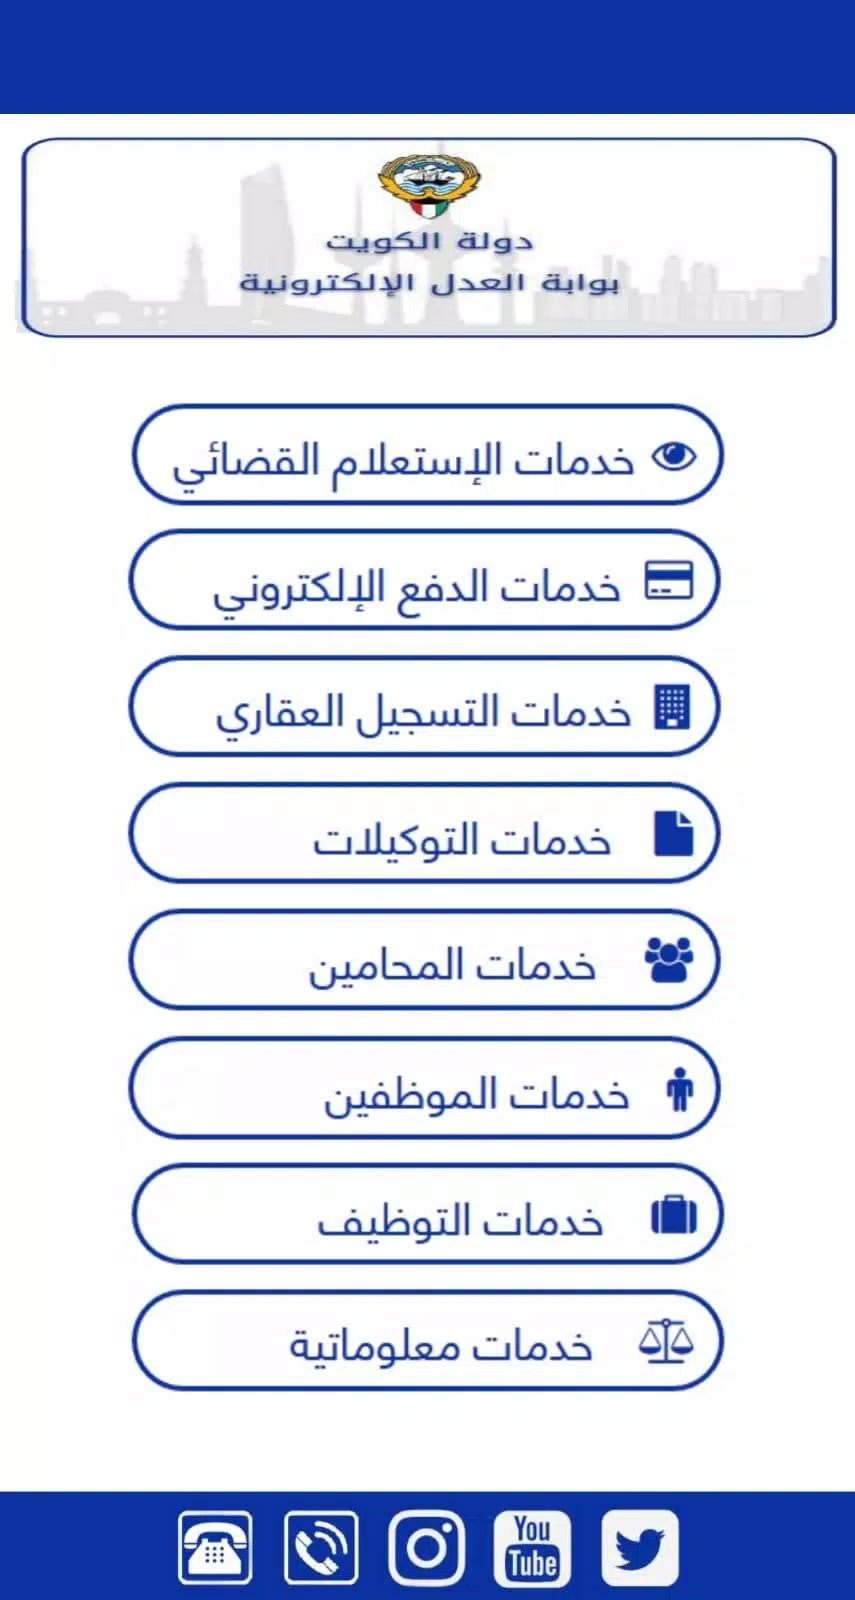 Download do APK de خدمات وزارة العدل الالكترونية - دولة الكويت para Android